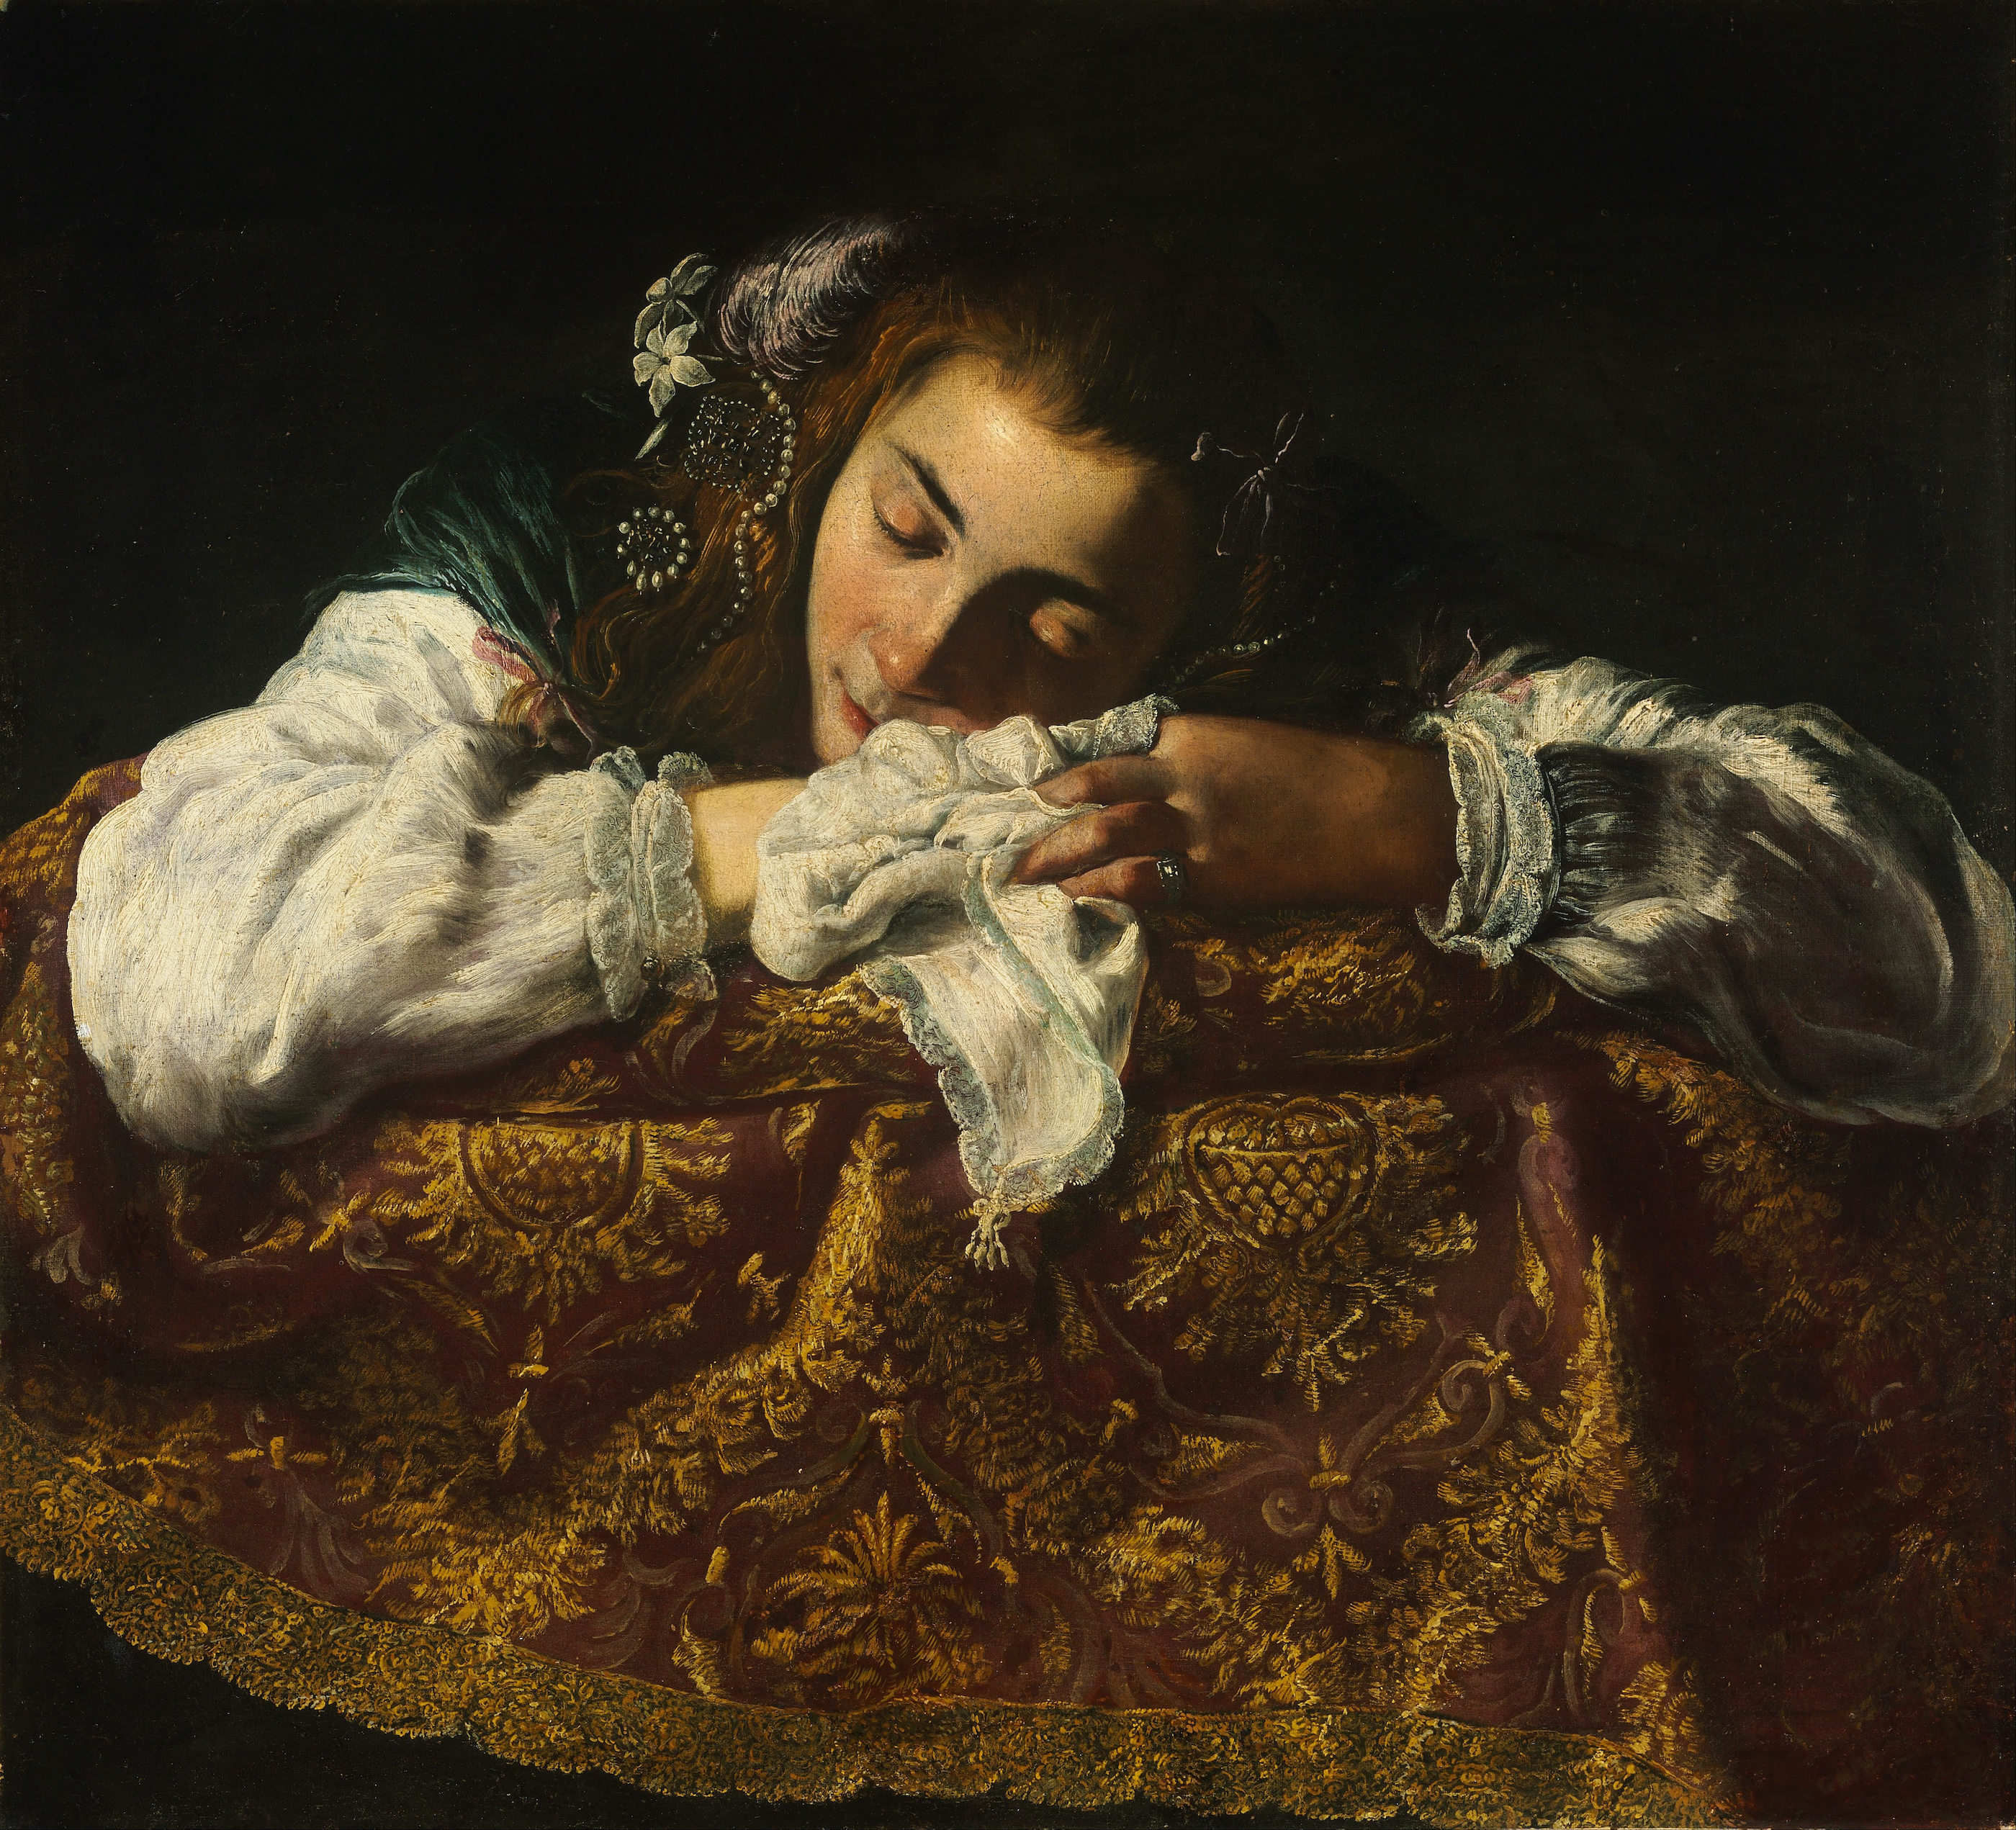 Garota Dormindo by Artista Desconhecido - 1620 - 1622 - 67.5 x 74 cm 